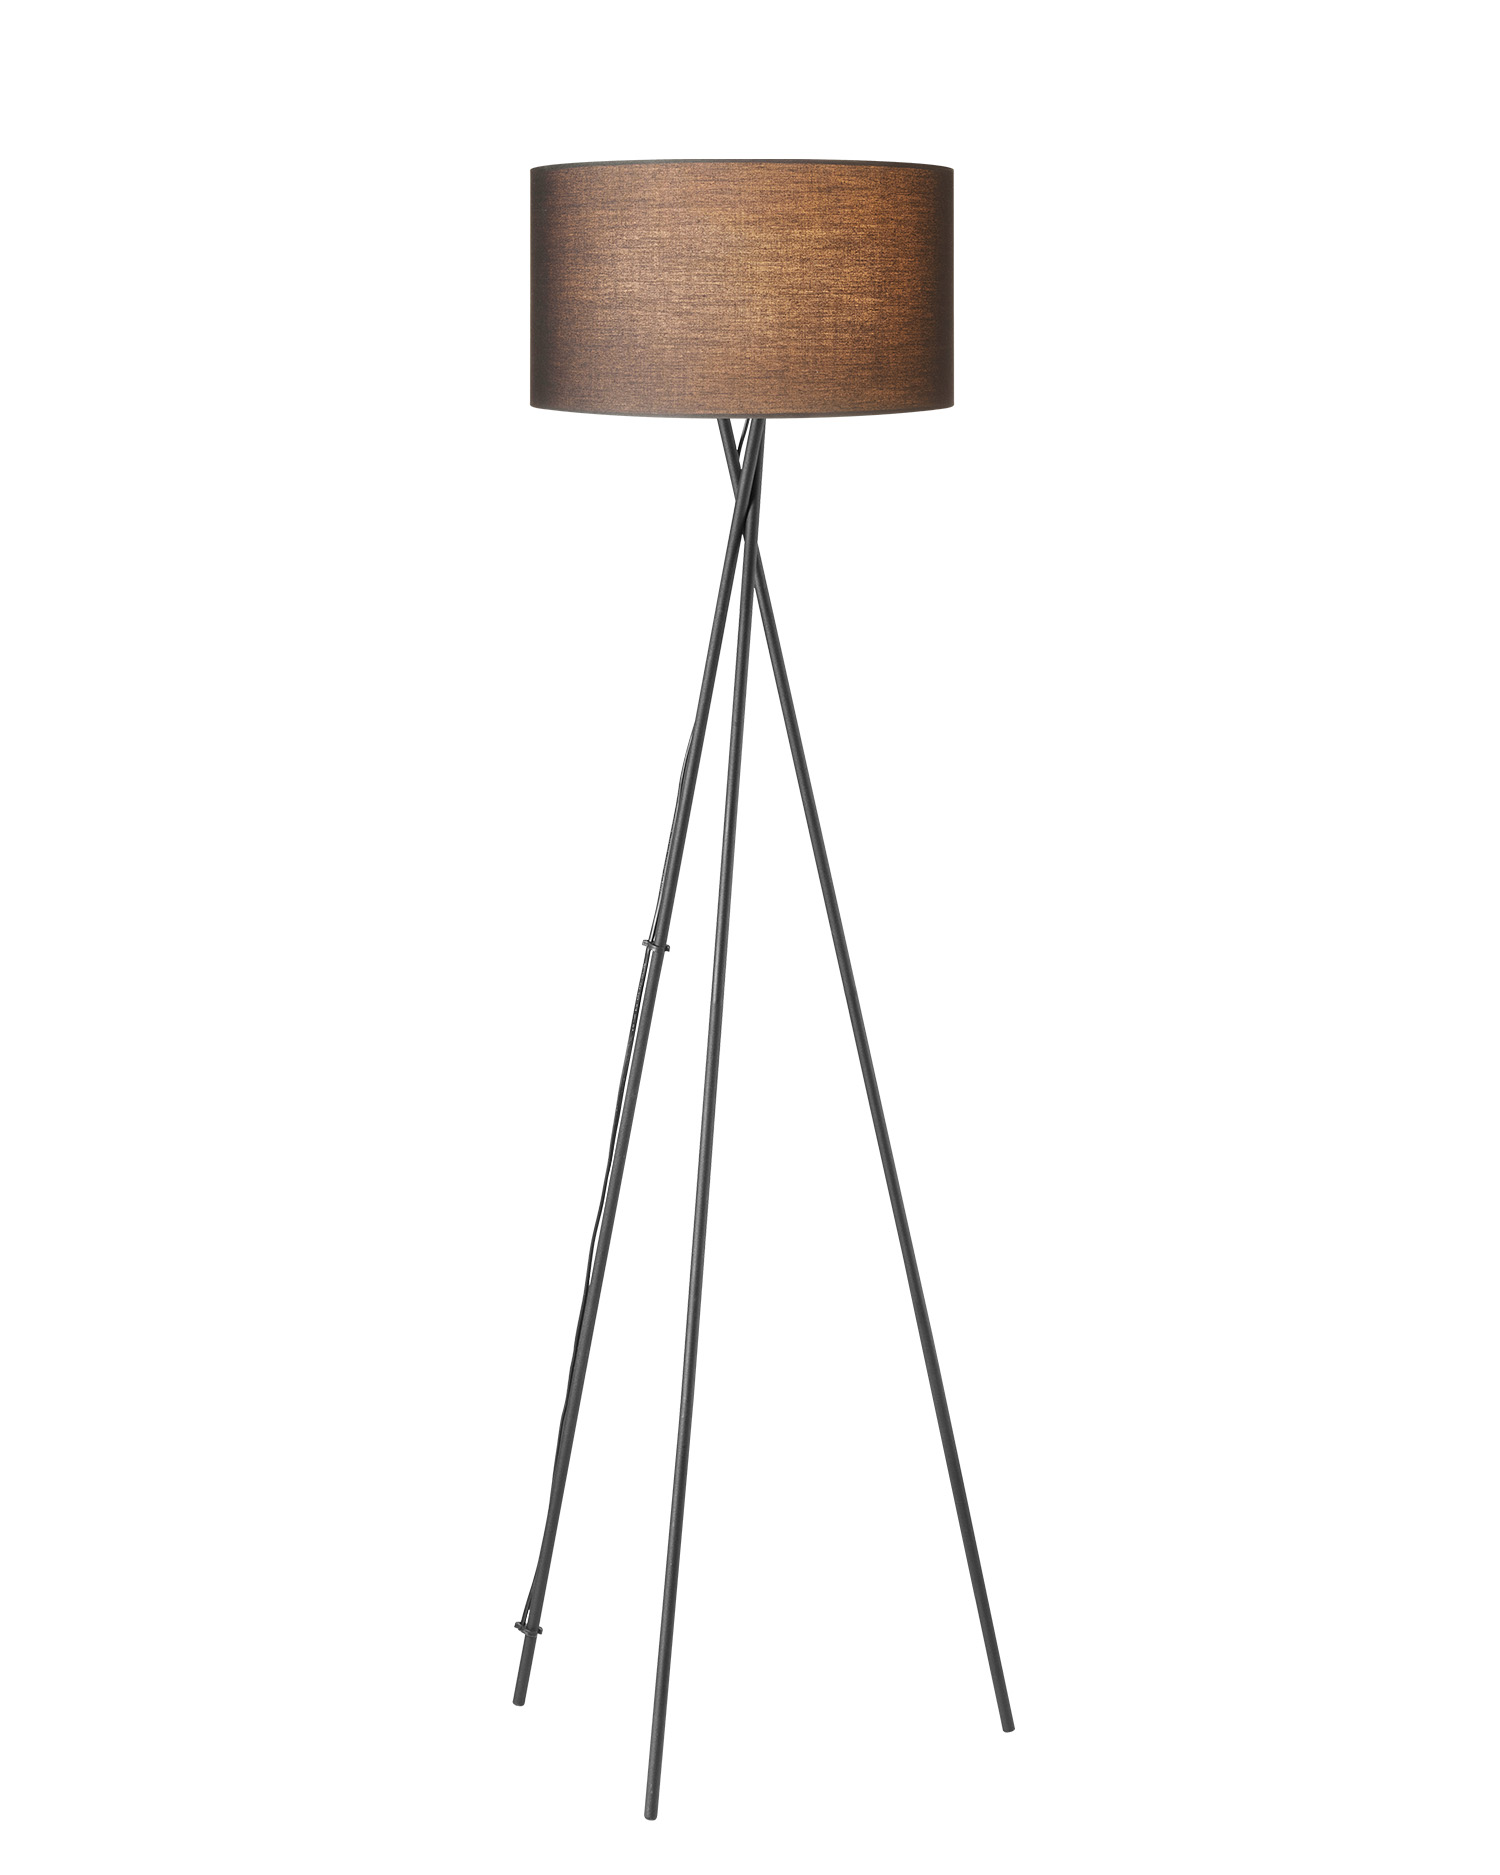 Tangla lighting - TLF7399-01BK - LED Floor lamp 1 Light - metal + TC fabric - black - cross tripod - E27